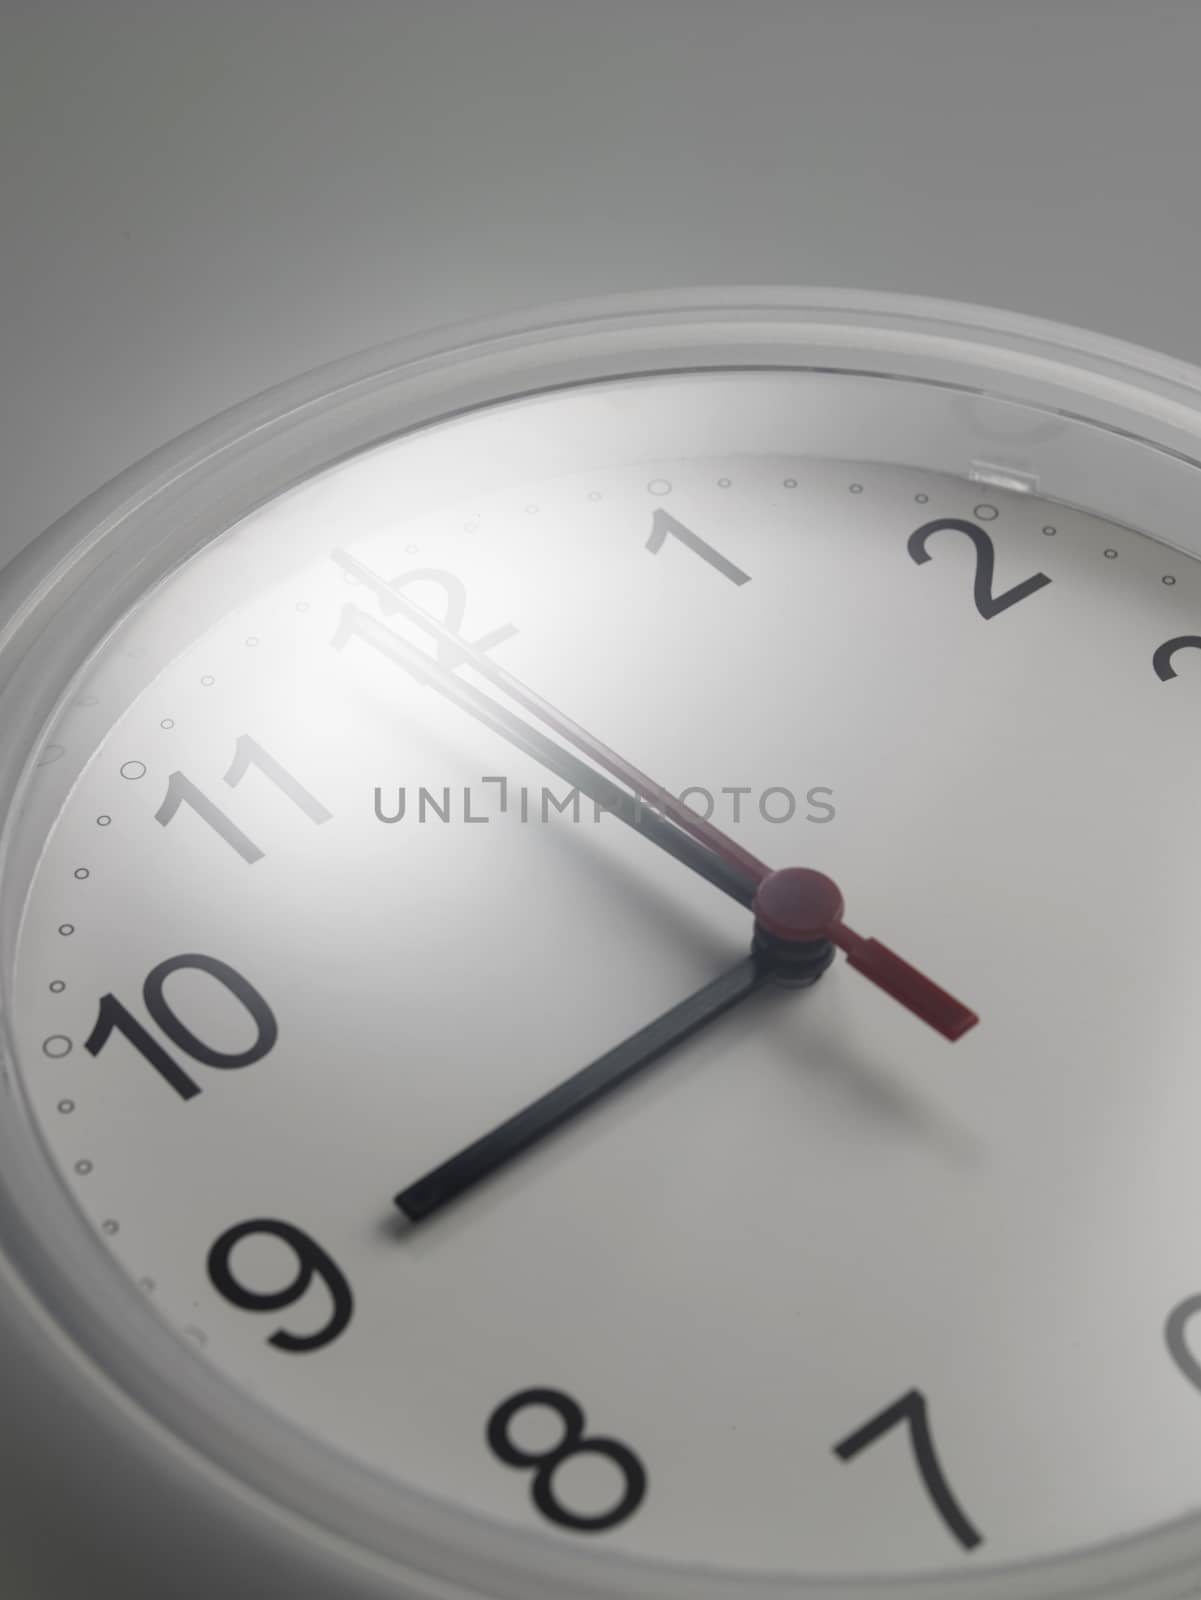 Close up of an analog clock at 9 o'clock

